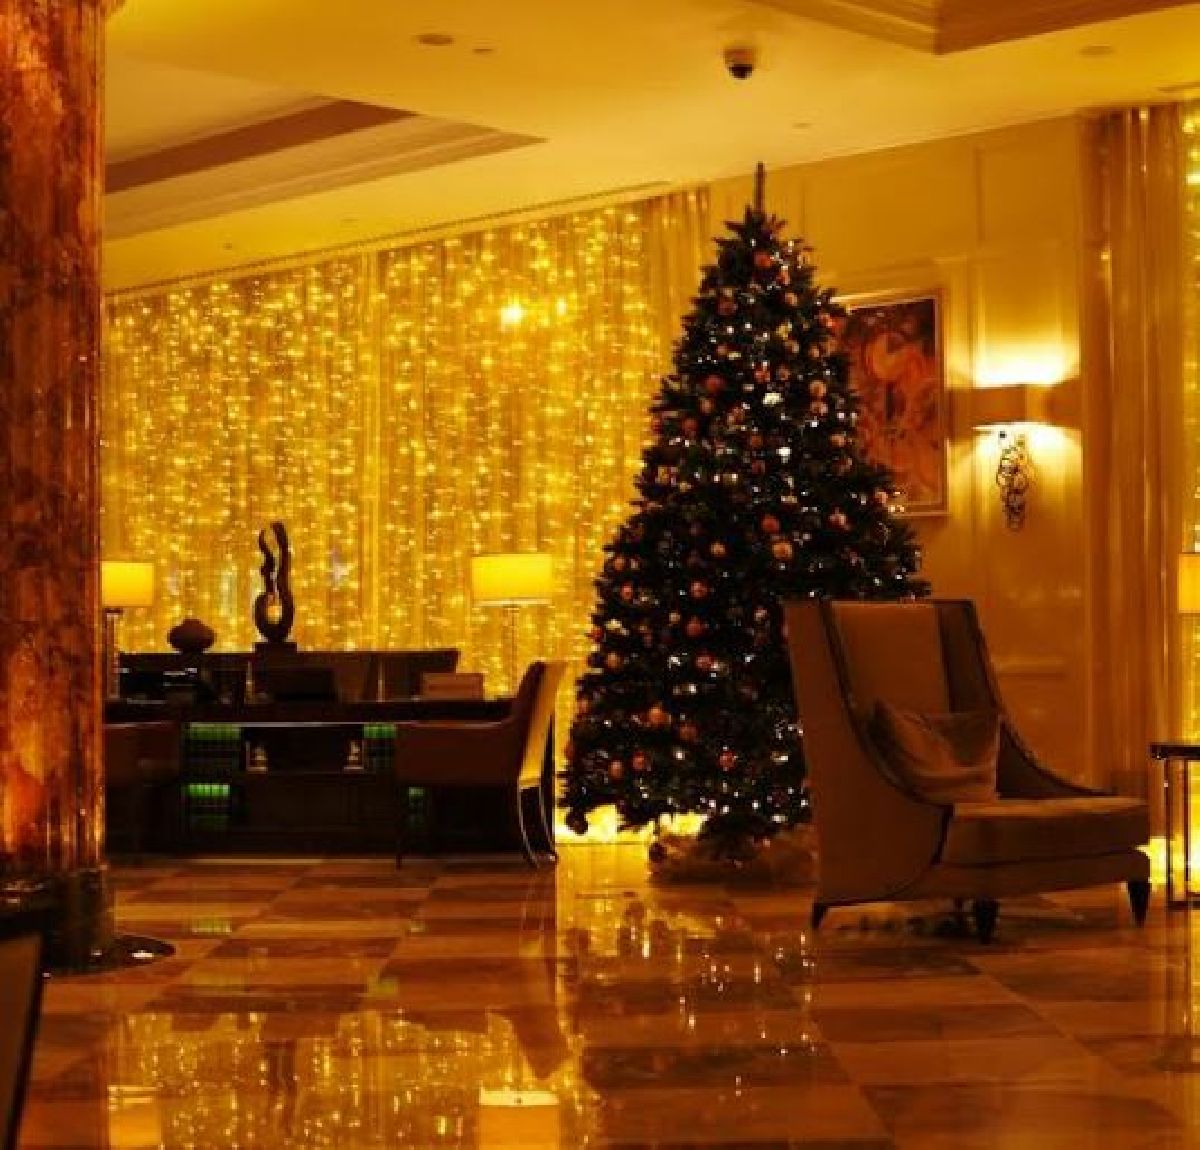 HotéisRIO lança concurso para escolher melhor decoração de Natal entre os empreendimentos hoteleiros da cidade